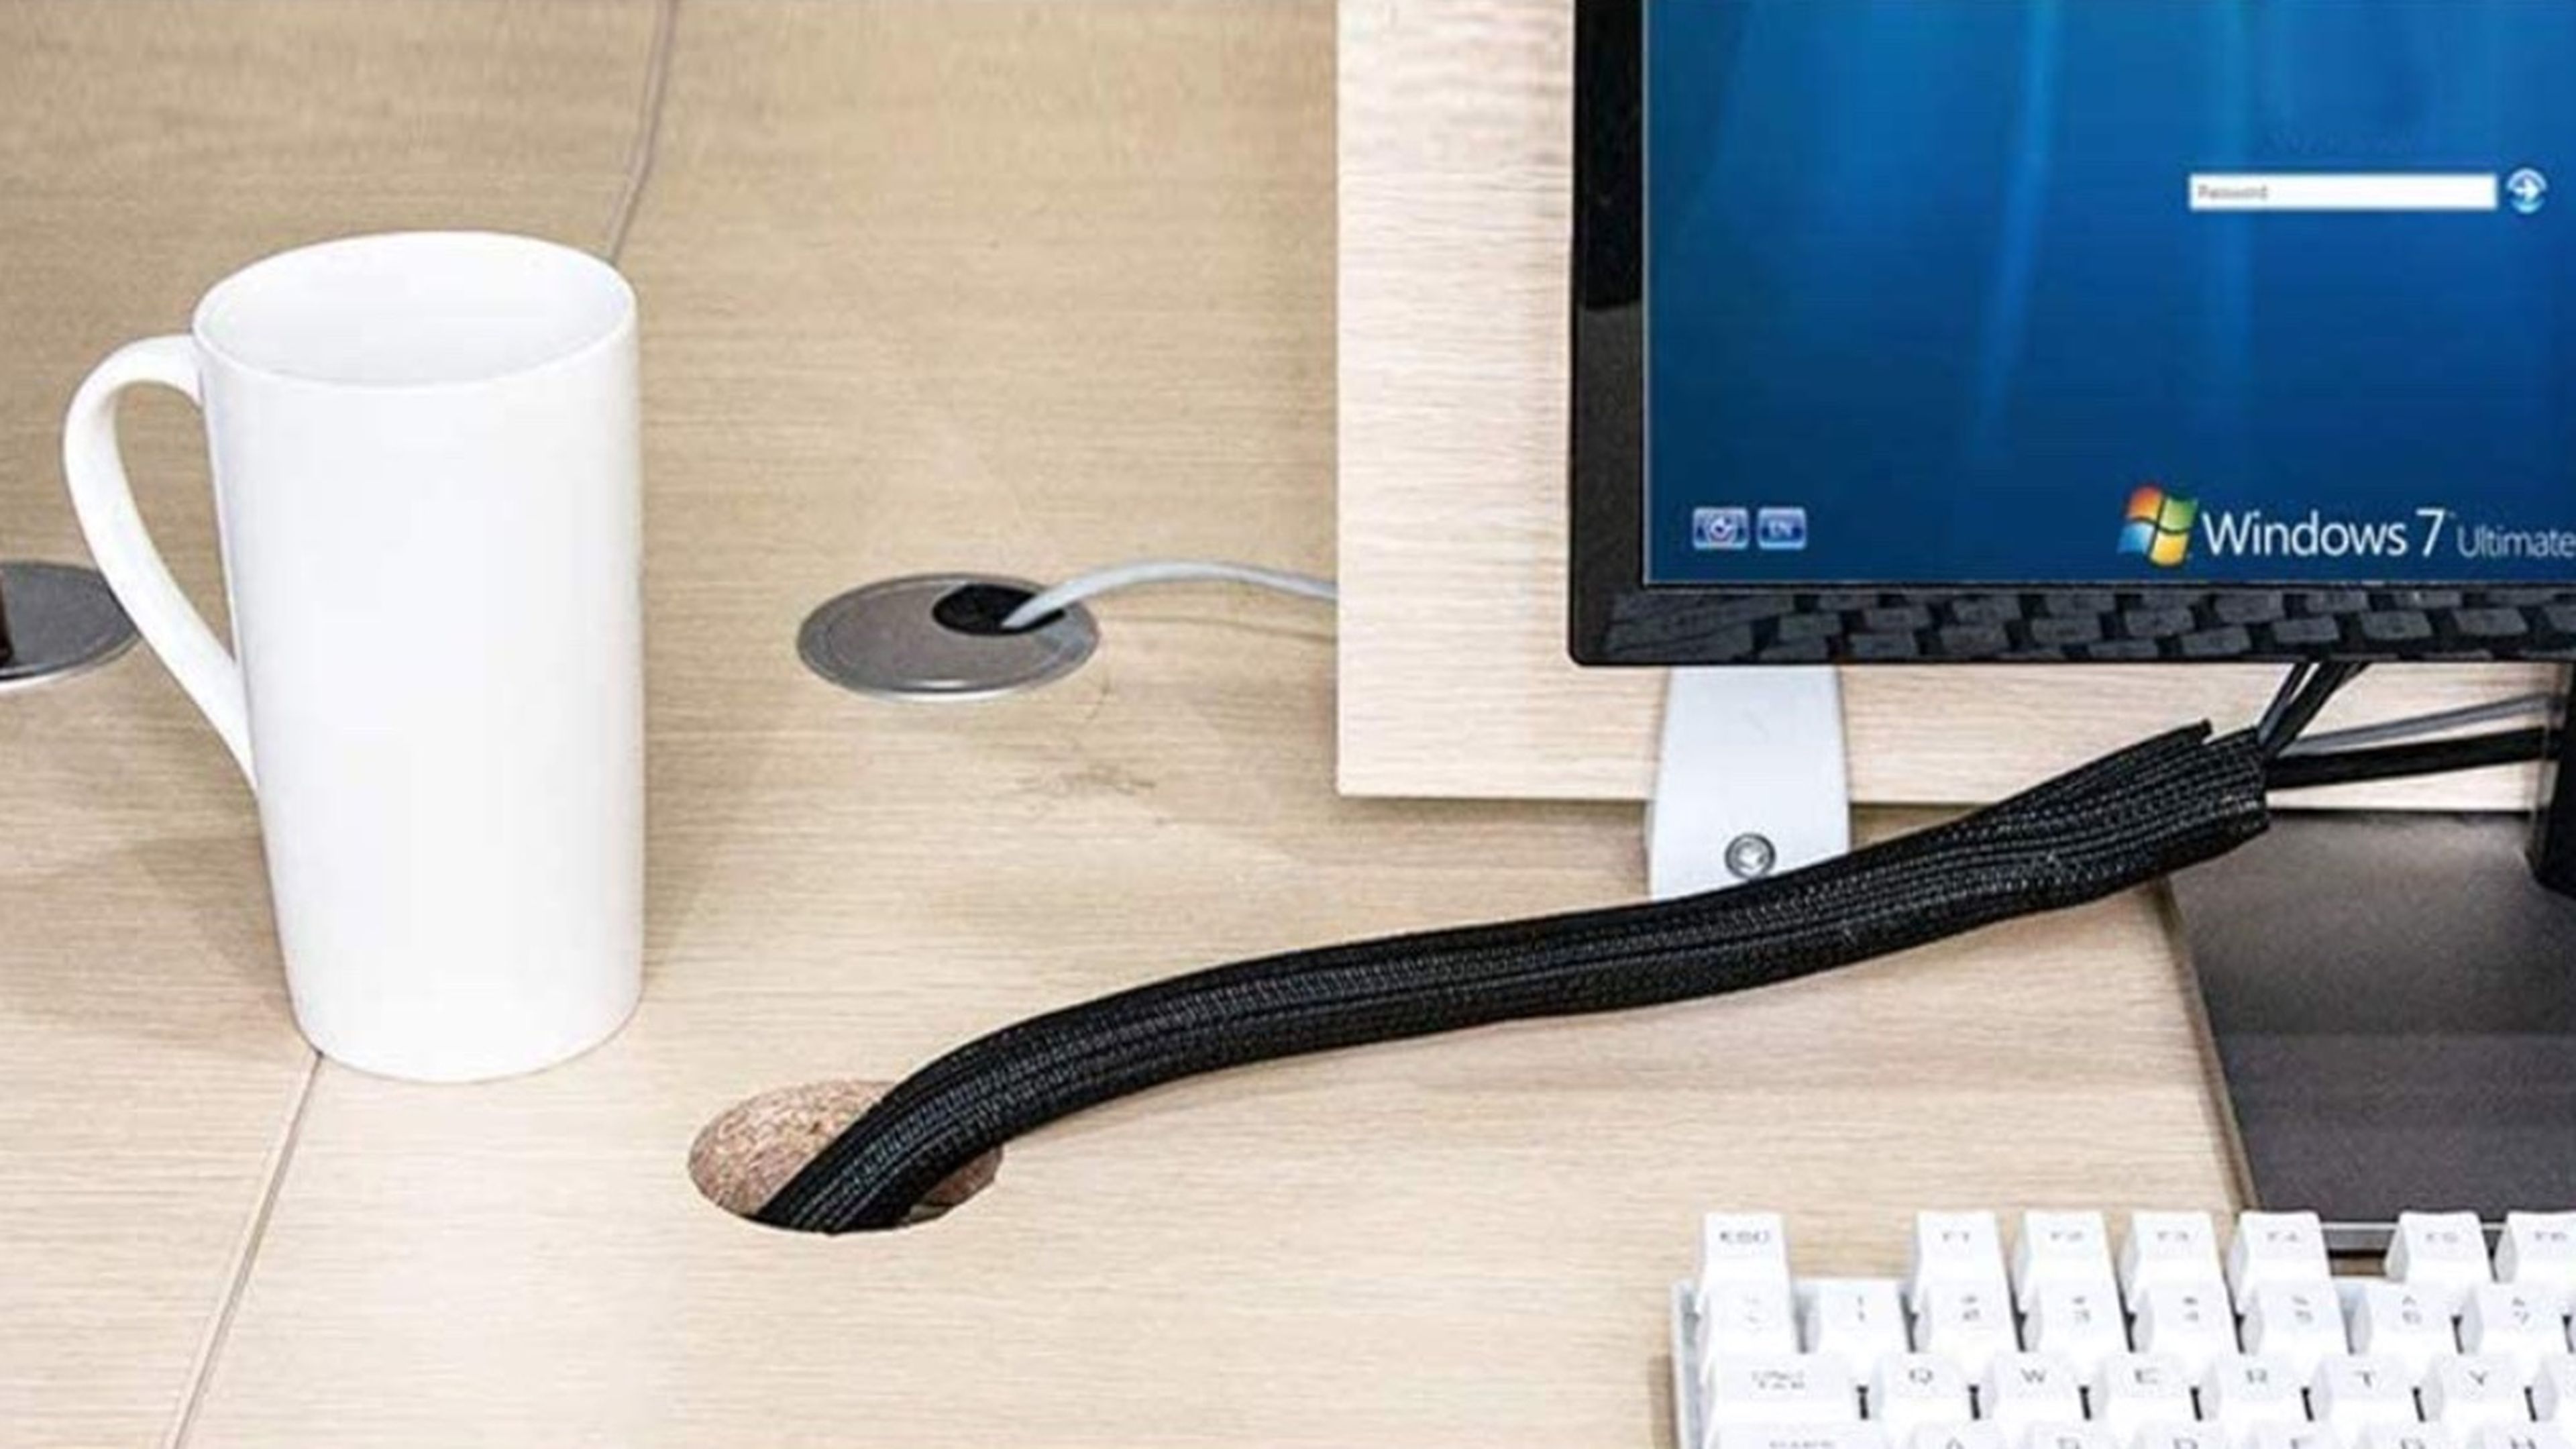 Accesorios para organizar tu escritorio y esconder cables y dispositivos